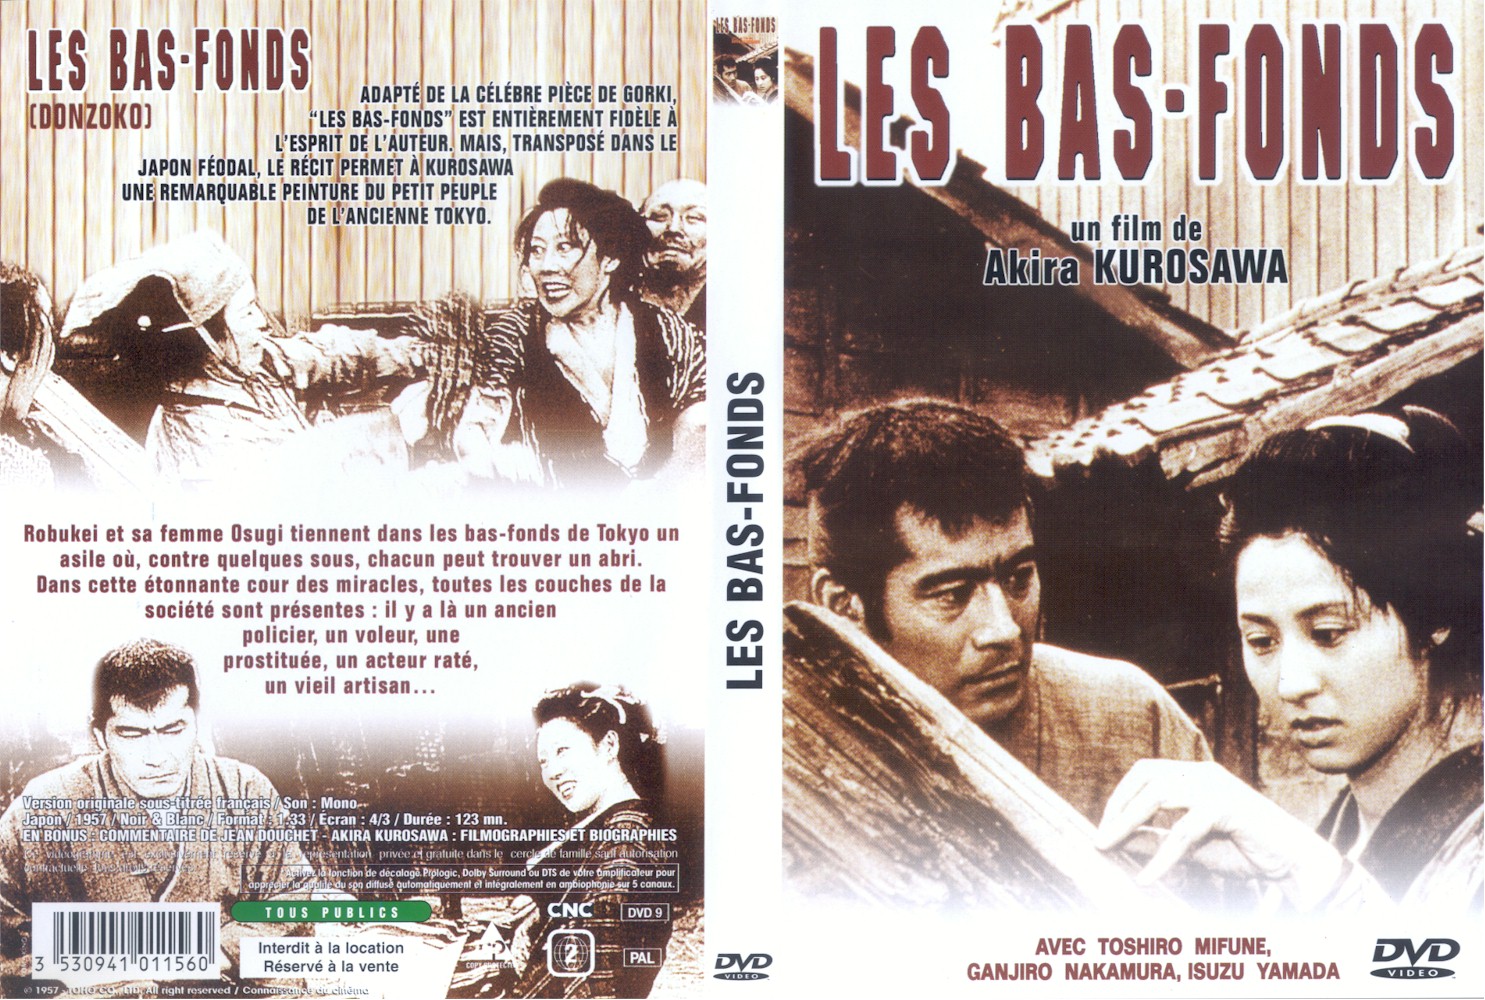 Jaquette DVD Les bas-fonds v2